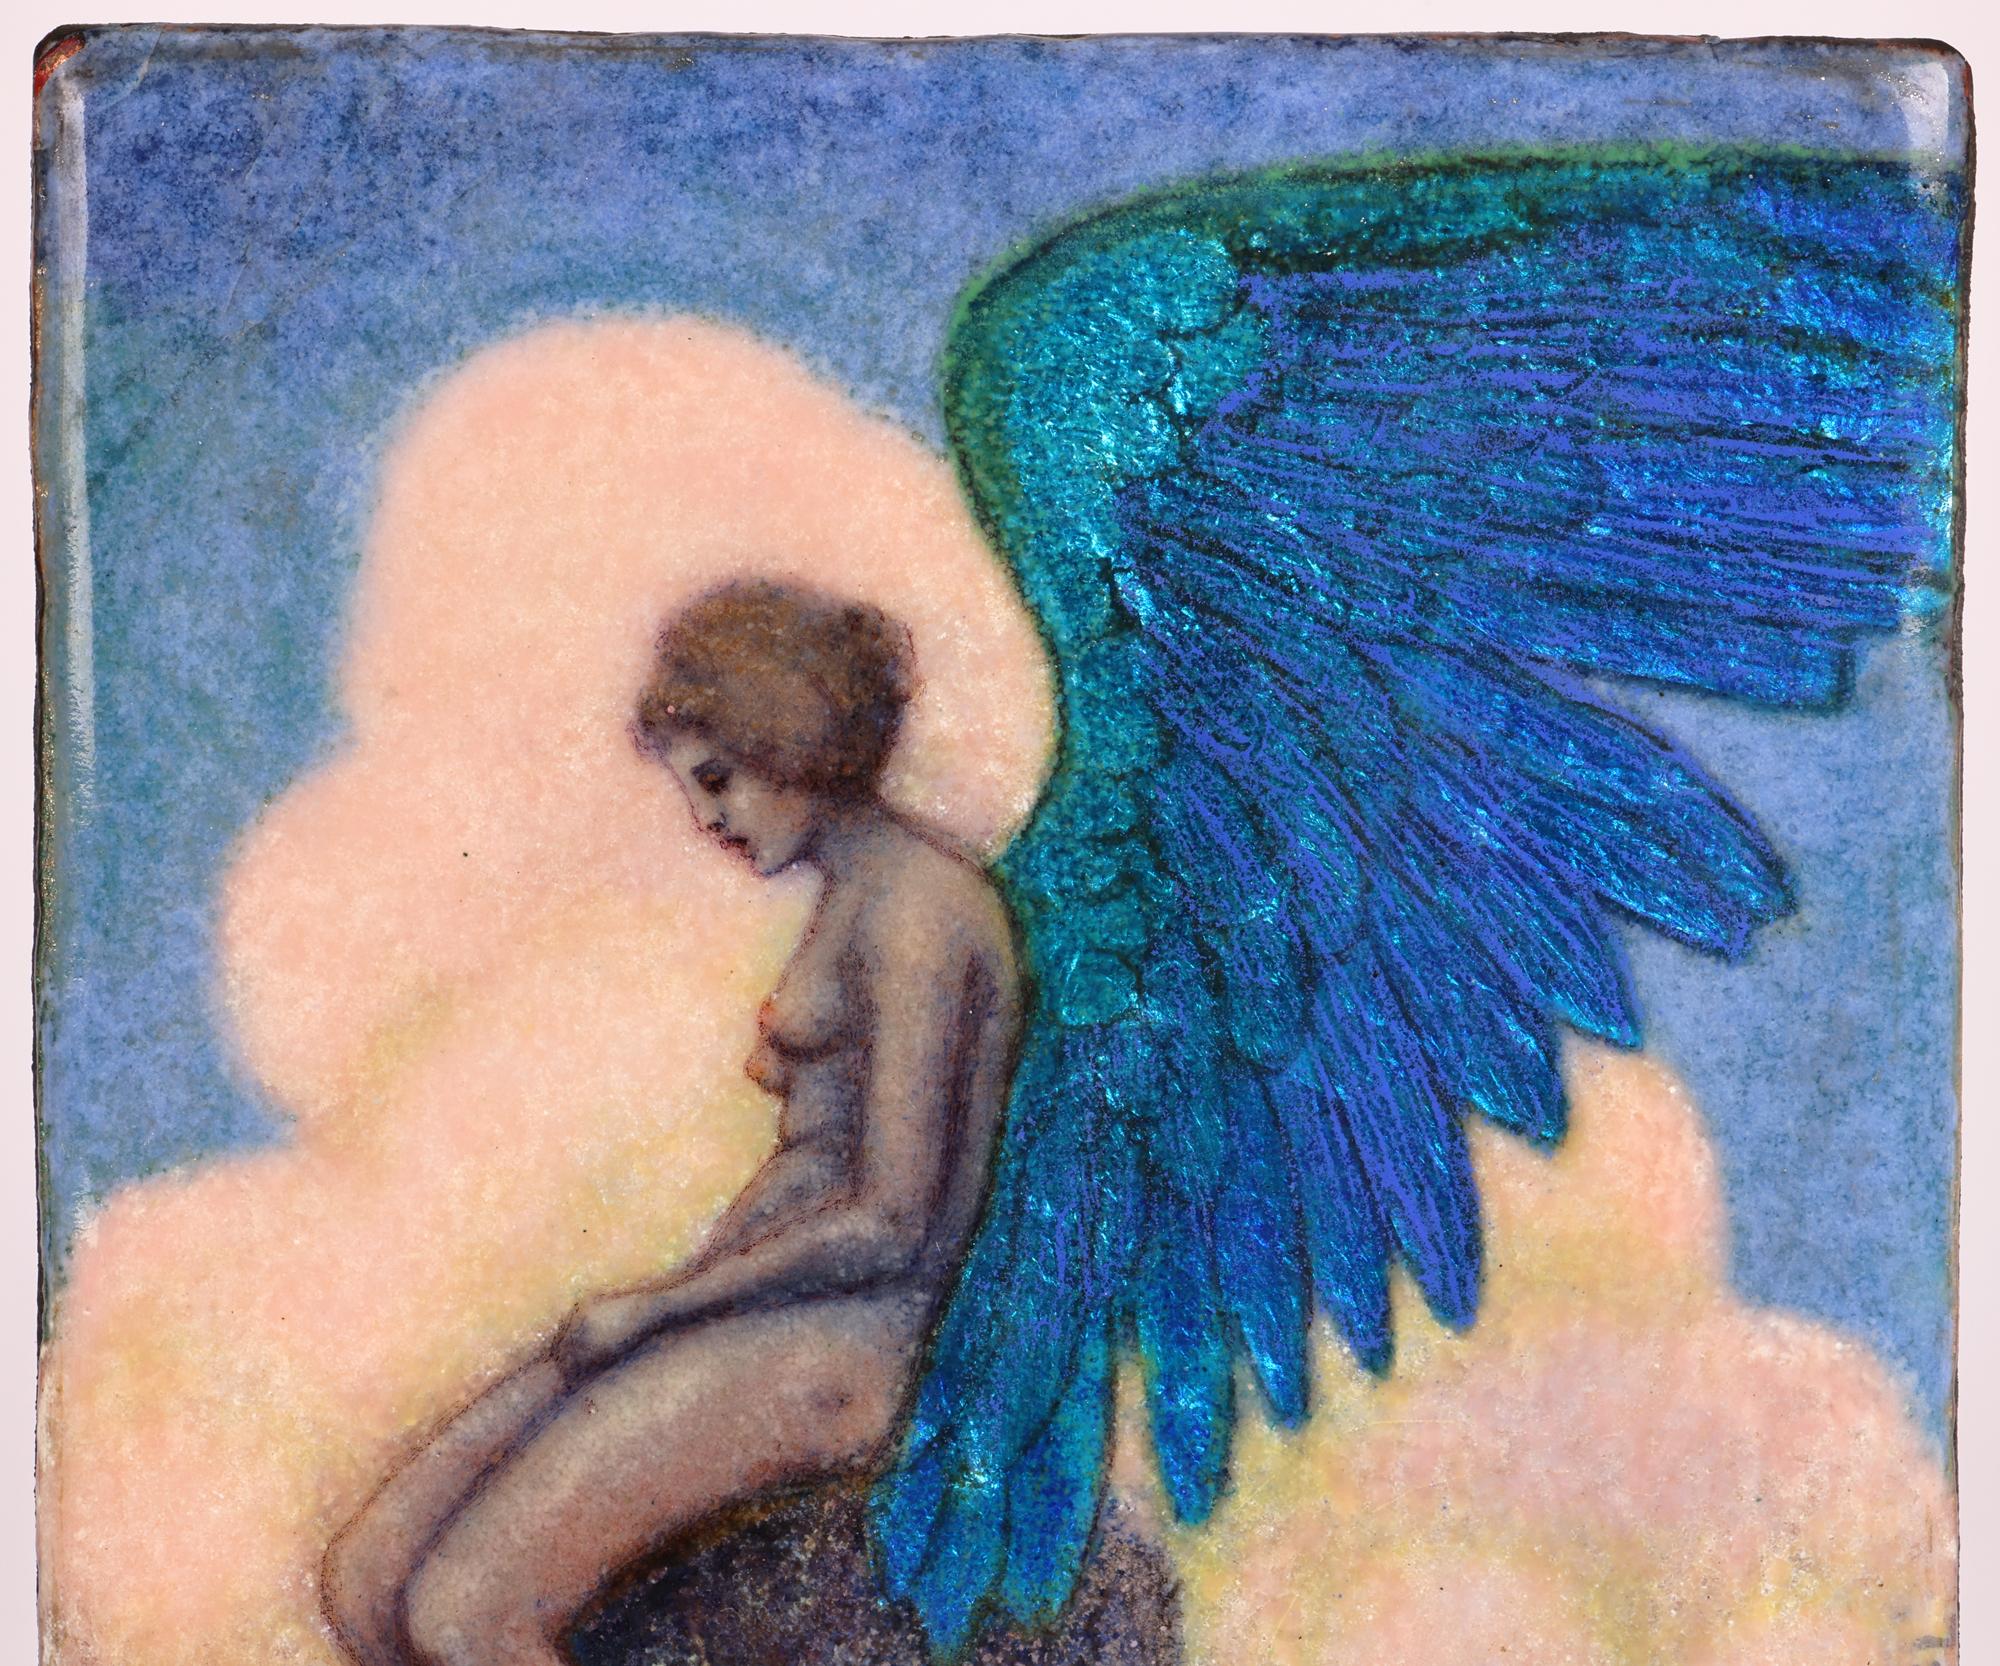 Copper Johanna Meier-Michel Art Nouveau Enamel Panel with Nude Winged Angel